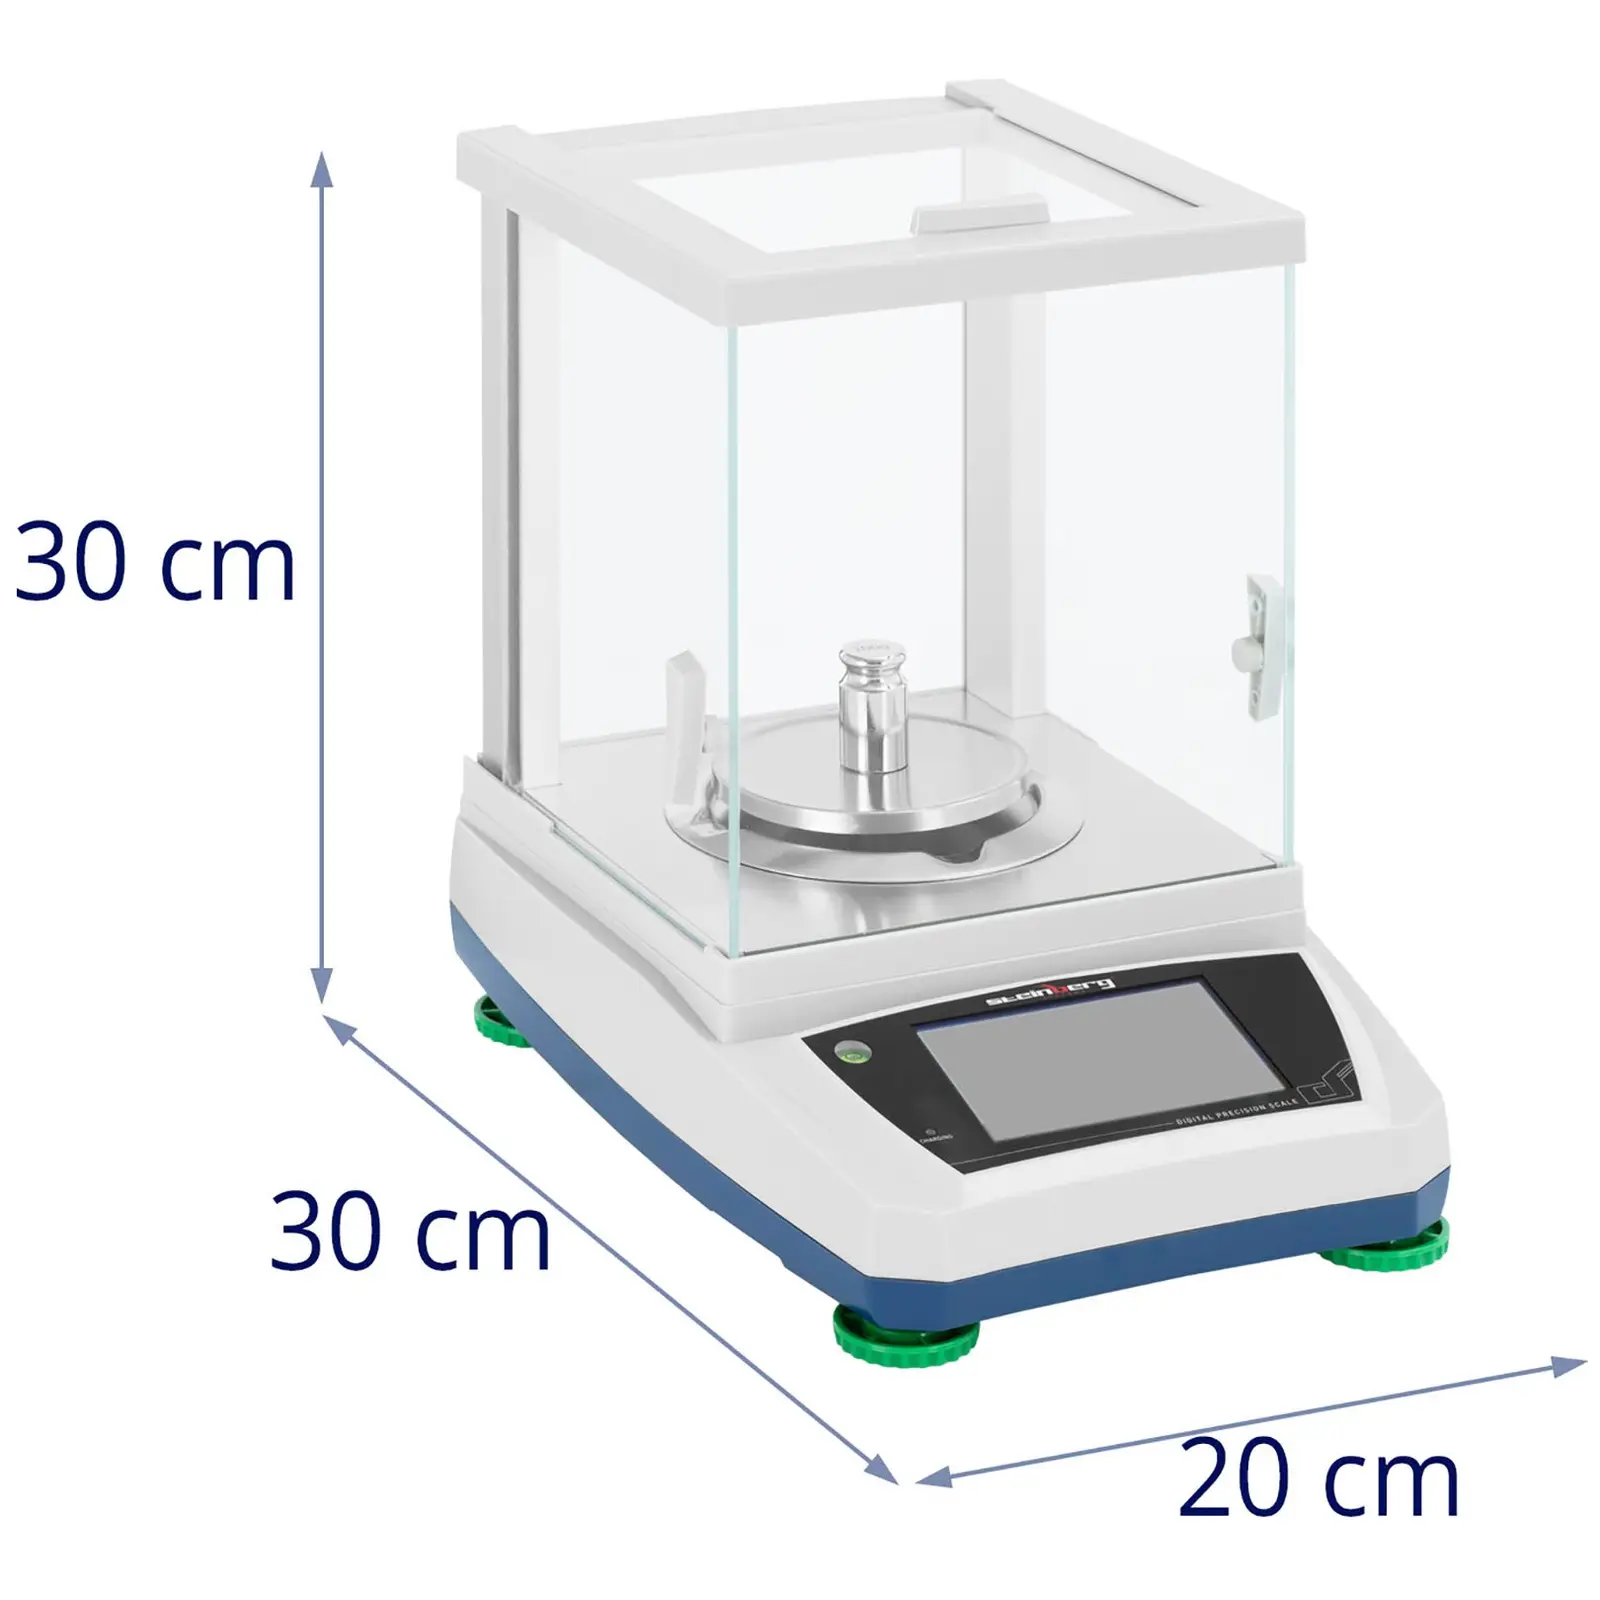 Balança de laboratório - 300 g / 0,001 g - Ø98 mm - painel táctil LCD - bateria recarregável - cobertura de vidro contra fatores externos